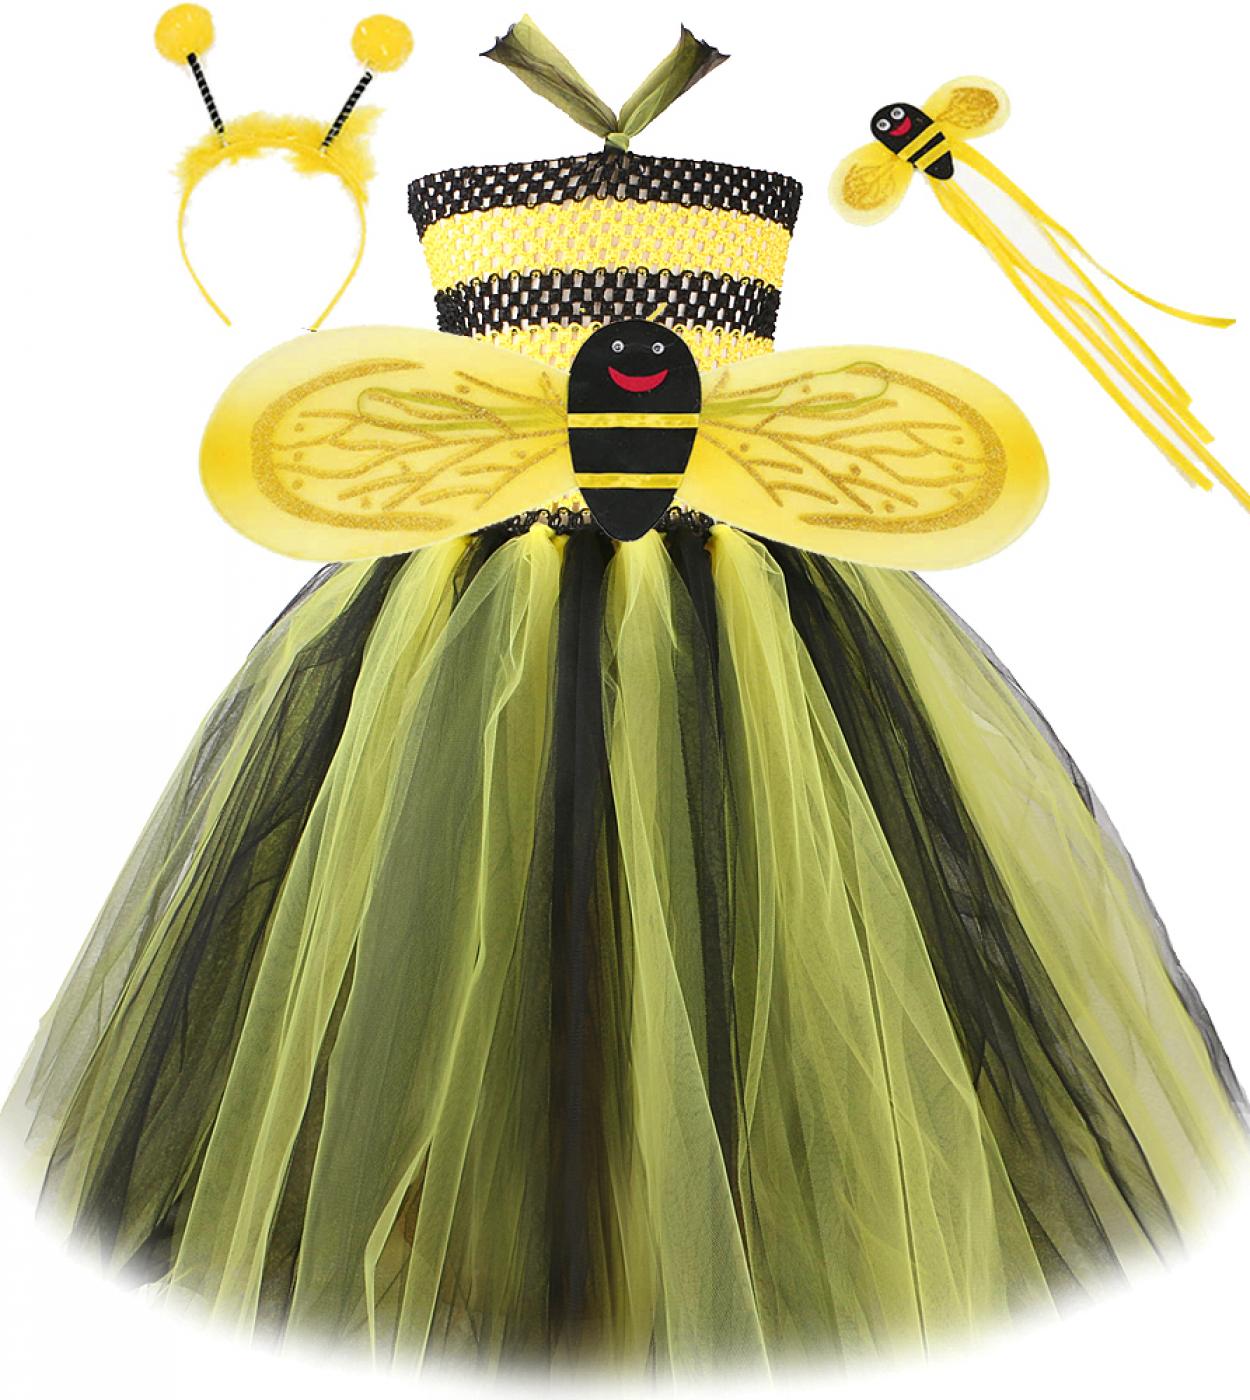 צהובה שחורה דבורת דבש שמלת טוטו ארוכה לילדות תחפושות ליל כל הקדושים לילדים ילדה שמלות פיות עם כנפי דבורה